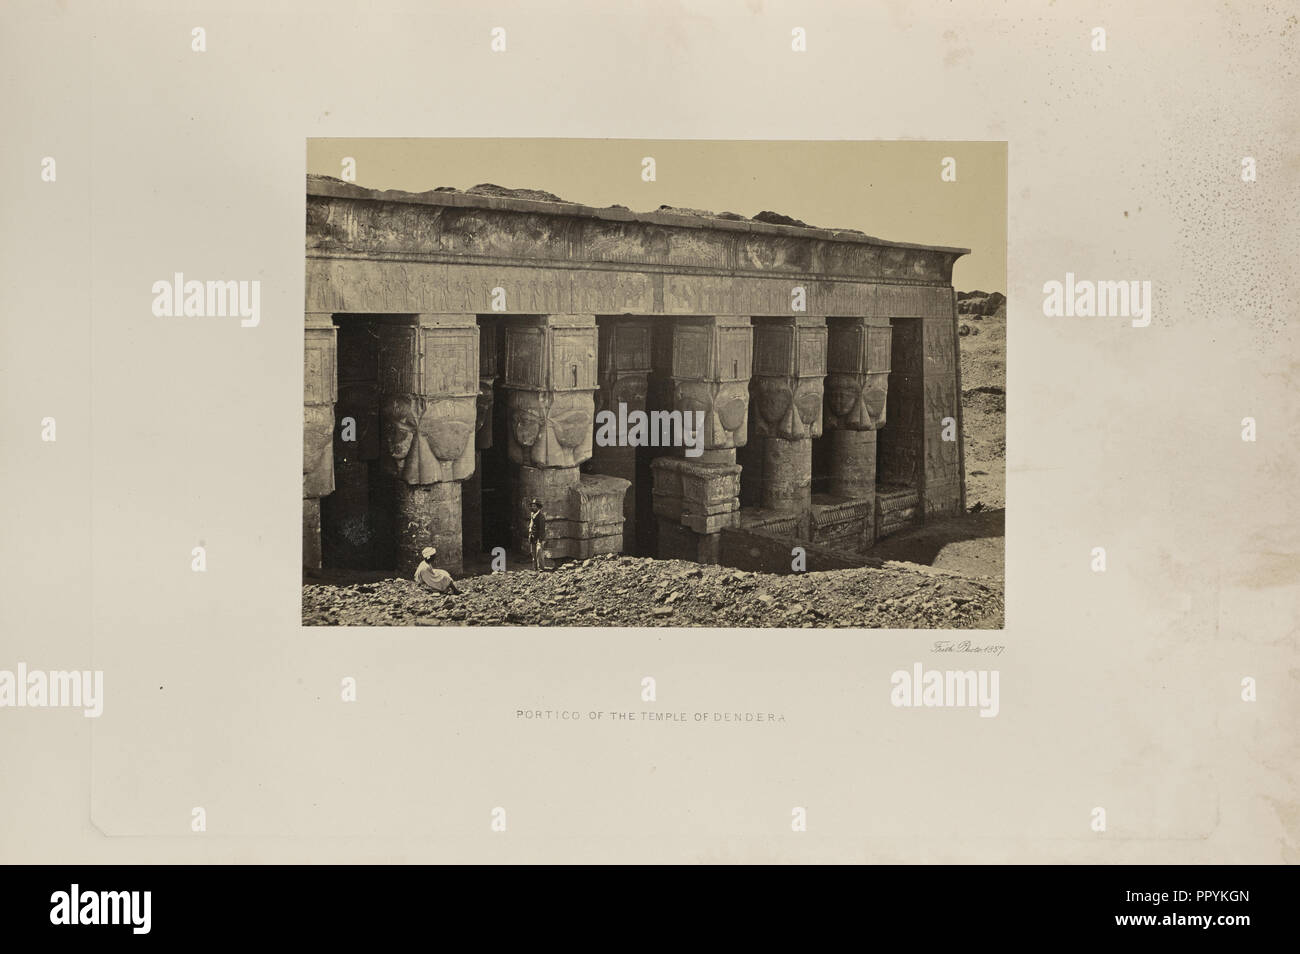 Portikus der Tempel von Dendera; Francis Frith, Englisch, 1822-1898, Dendera, Qena Governorate, Ägypten; 1857; Eiklar silber Stockfoto